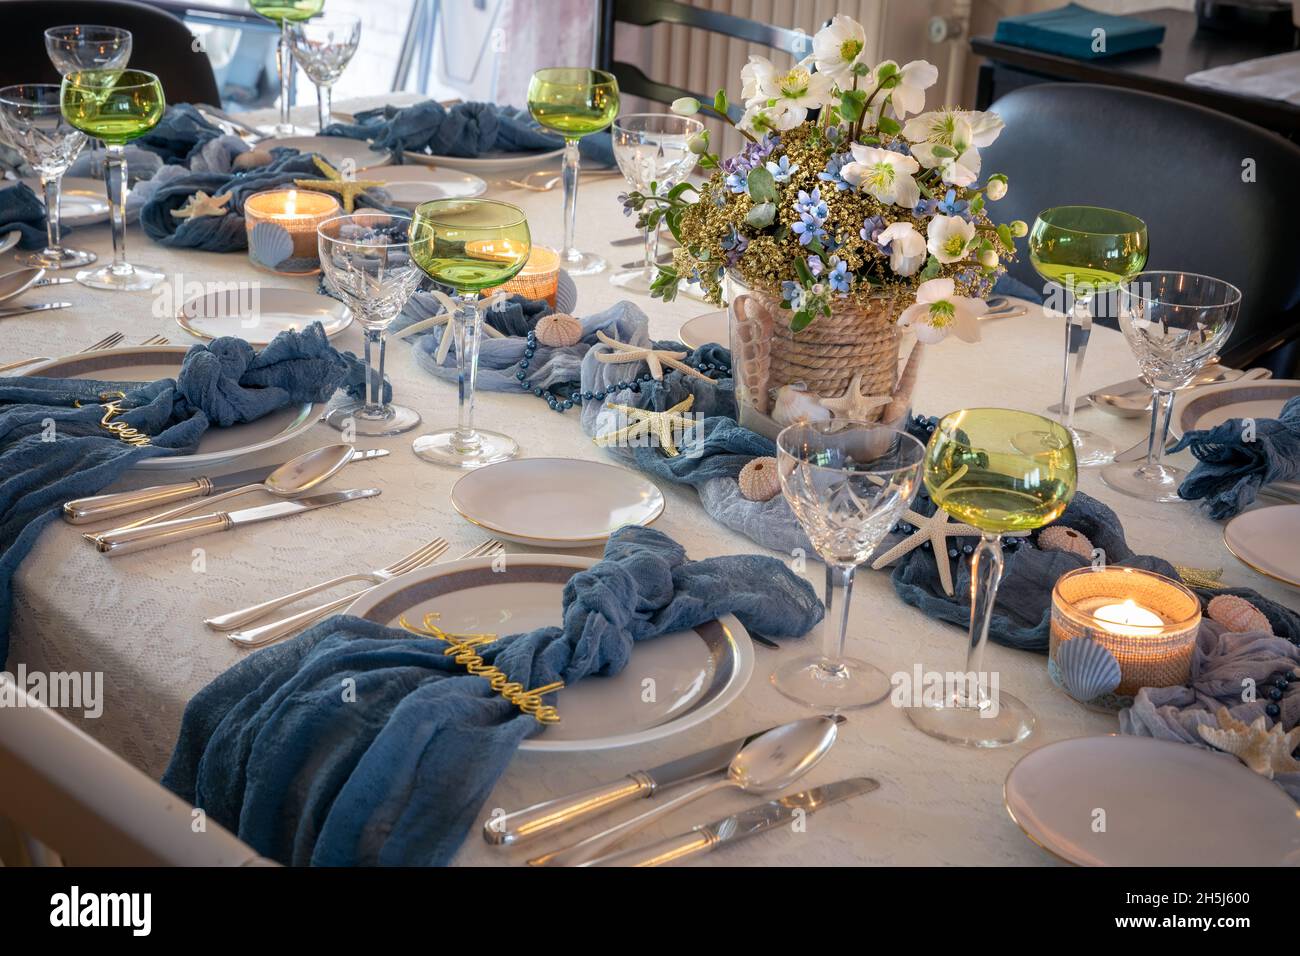 Weihnachtsessen Tischdekorationen in Blau und Gold nach einem Strandthema mit Muscheln und Seesternen Stockfoto